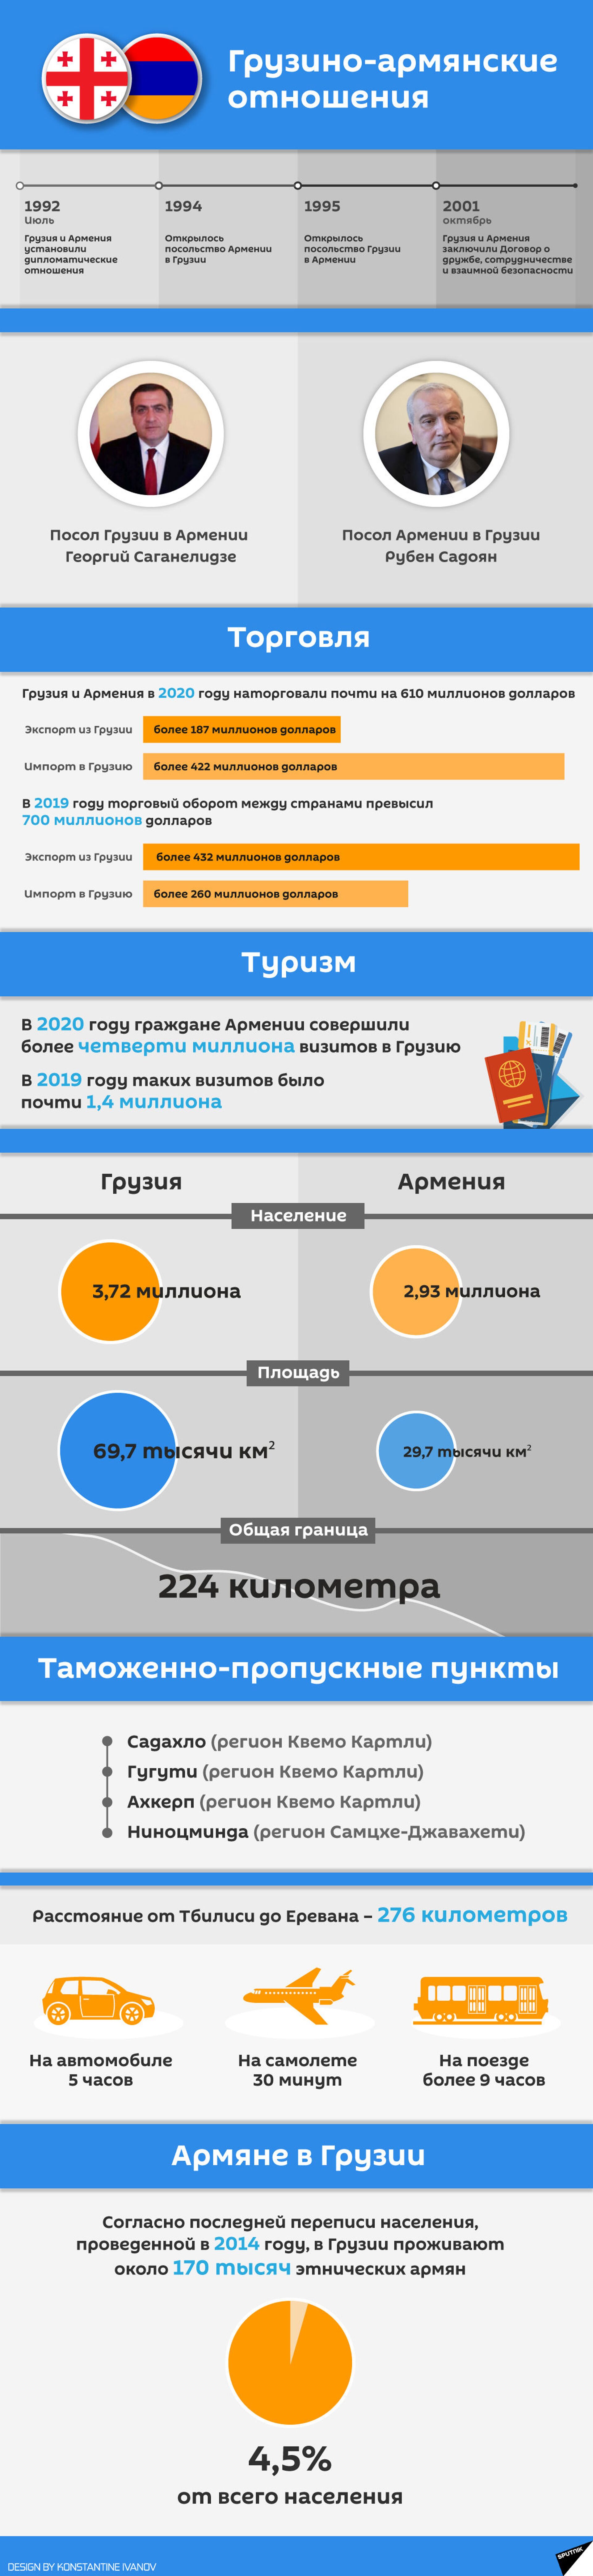 Грузино-армянские отношения 2021 - инфографика - Sputnik Грузия, 1920, 24.08.2021